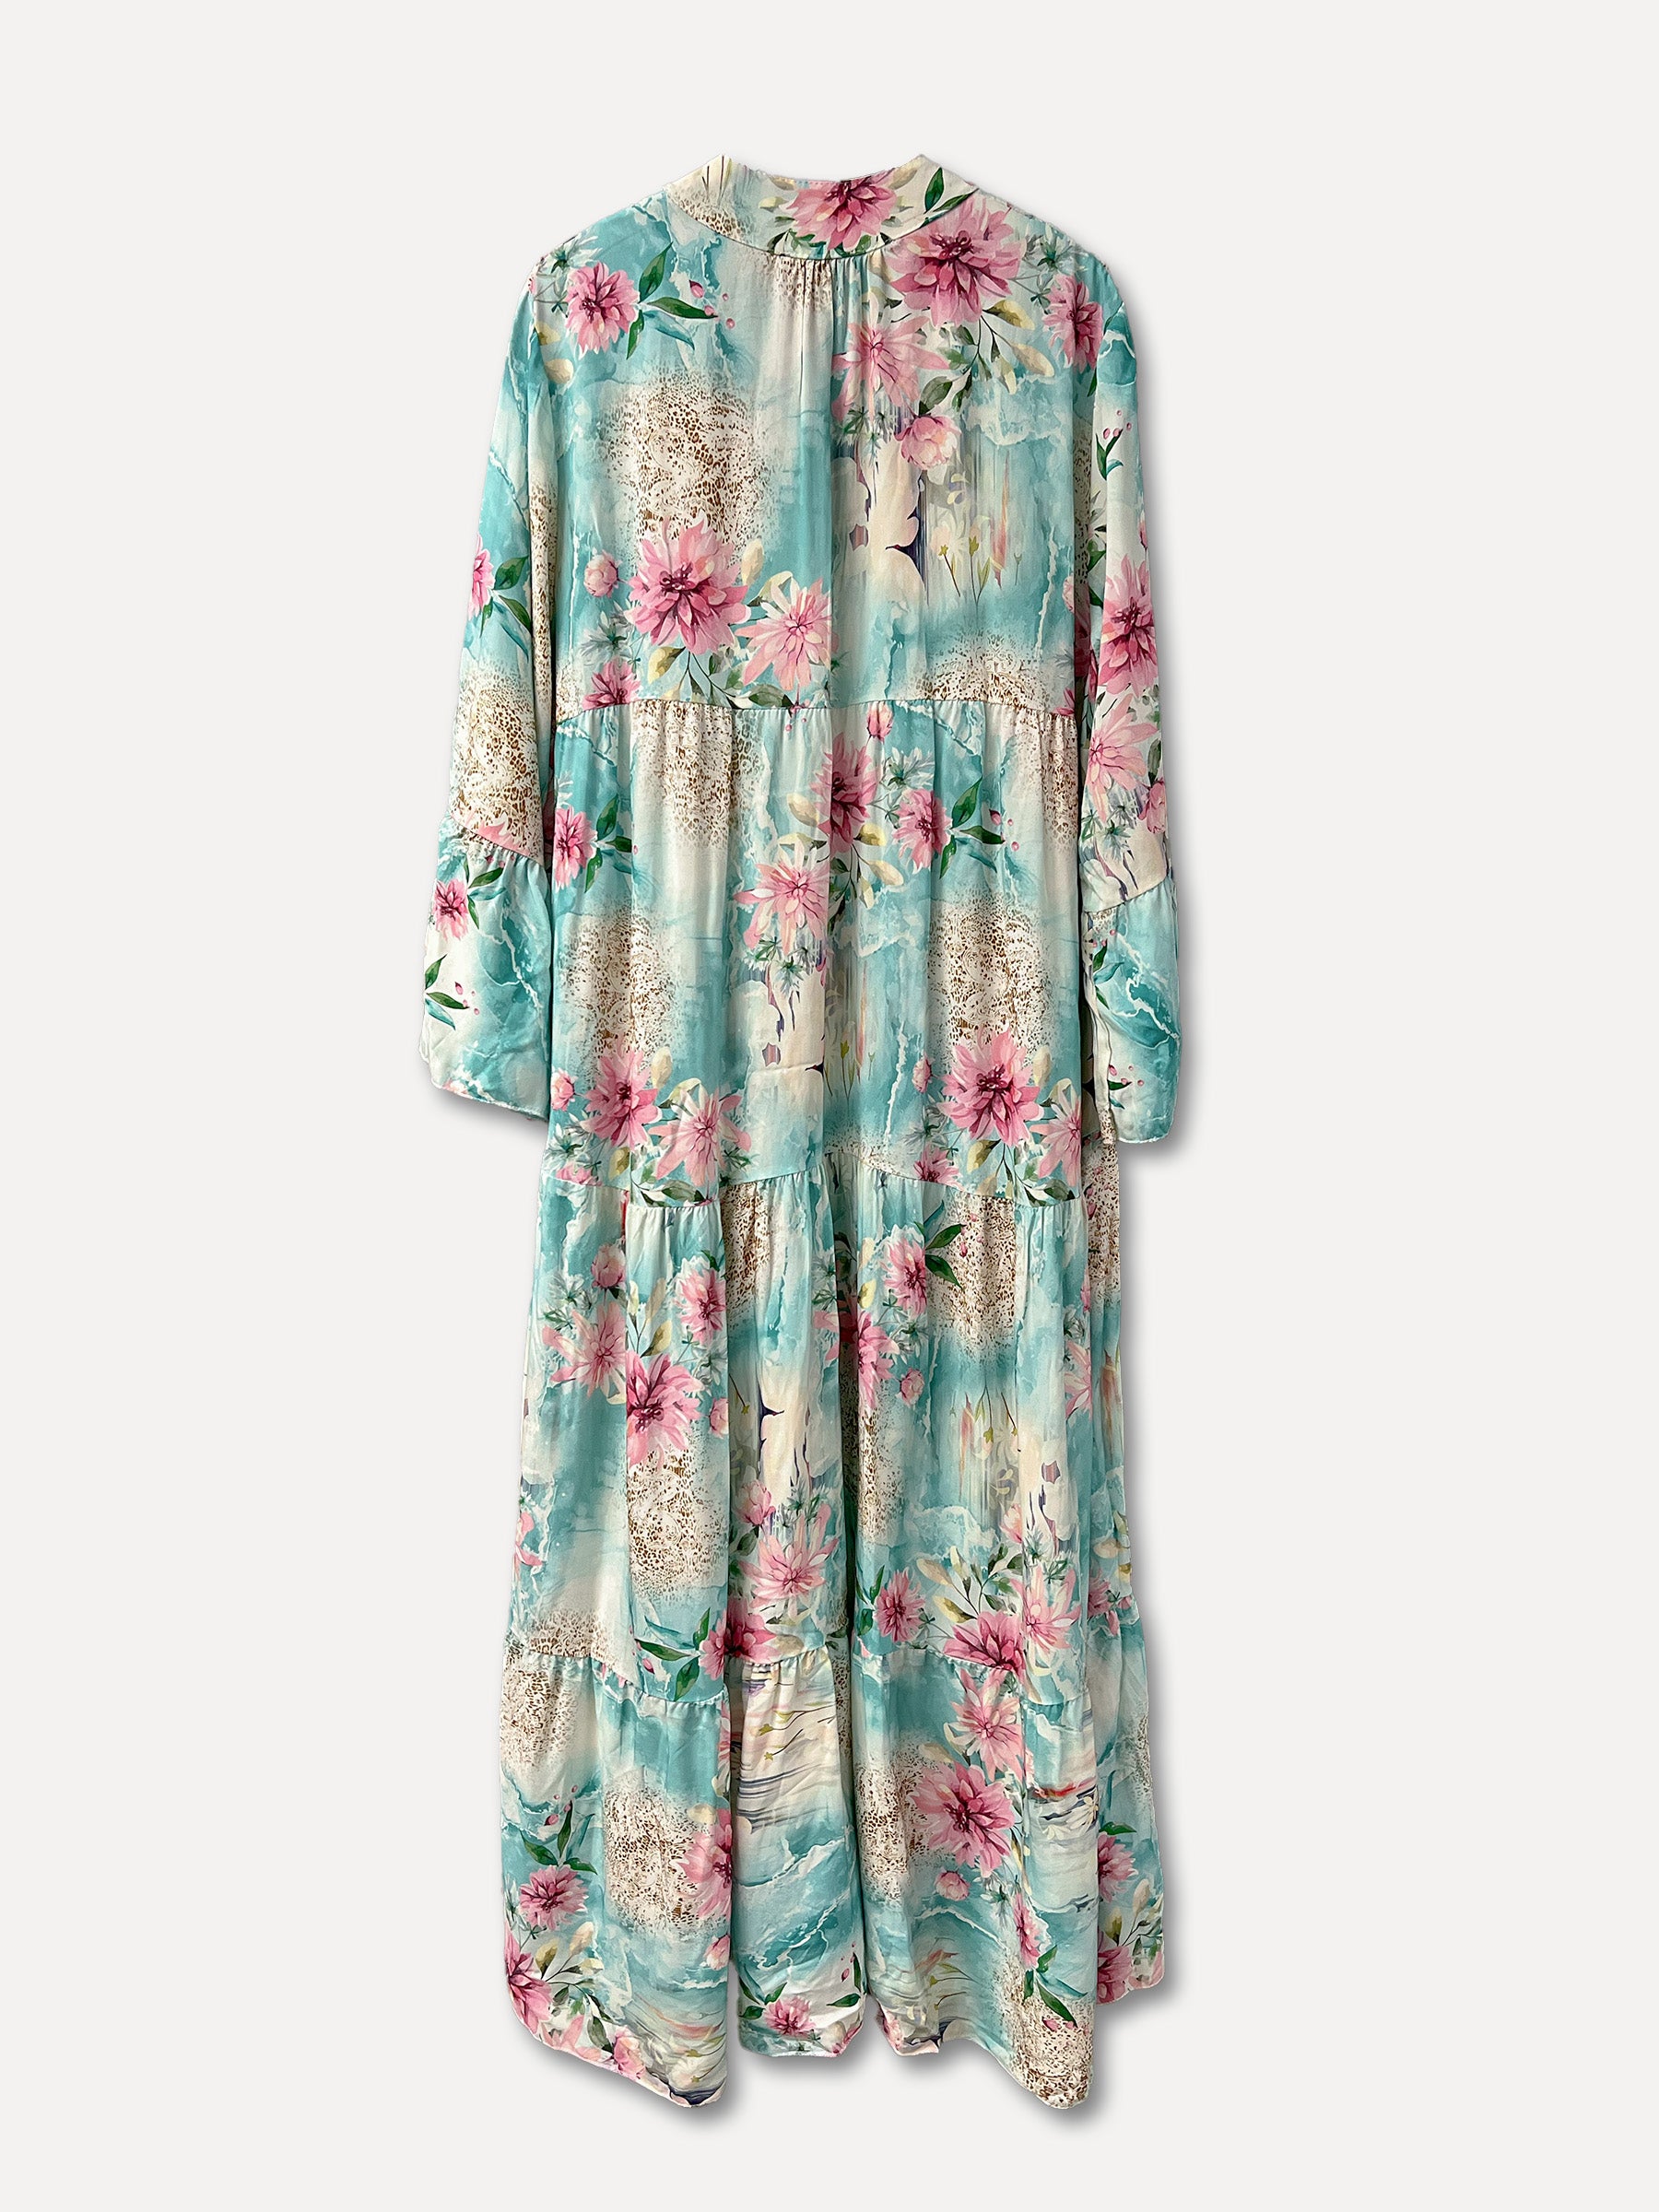 OSAKA Dress, Turquoise